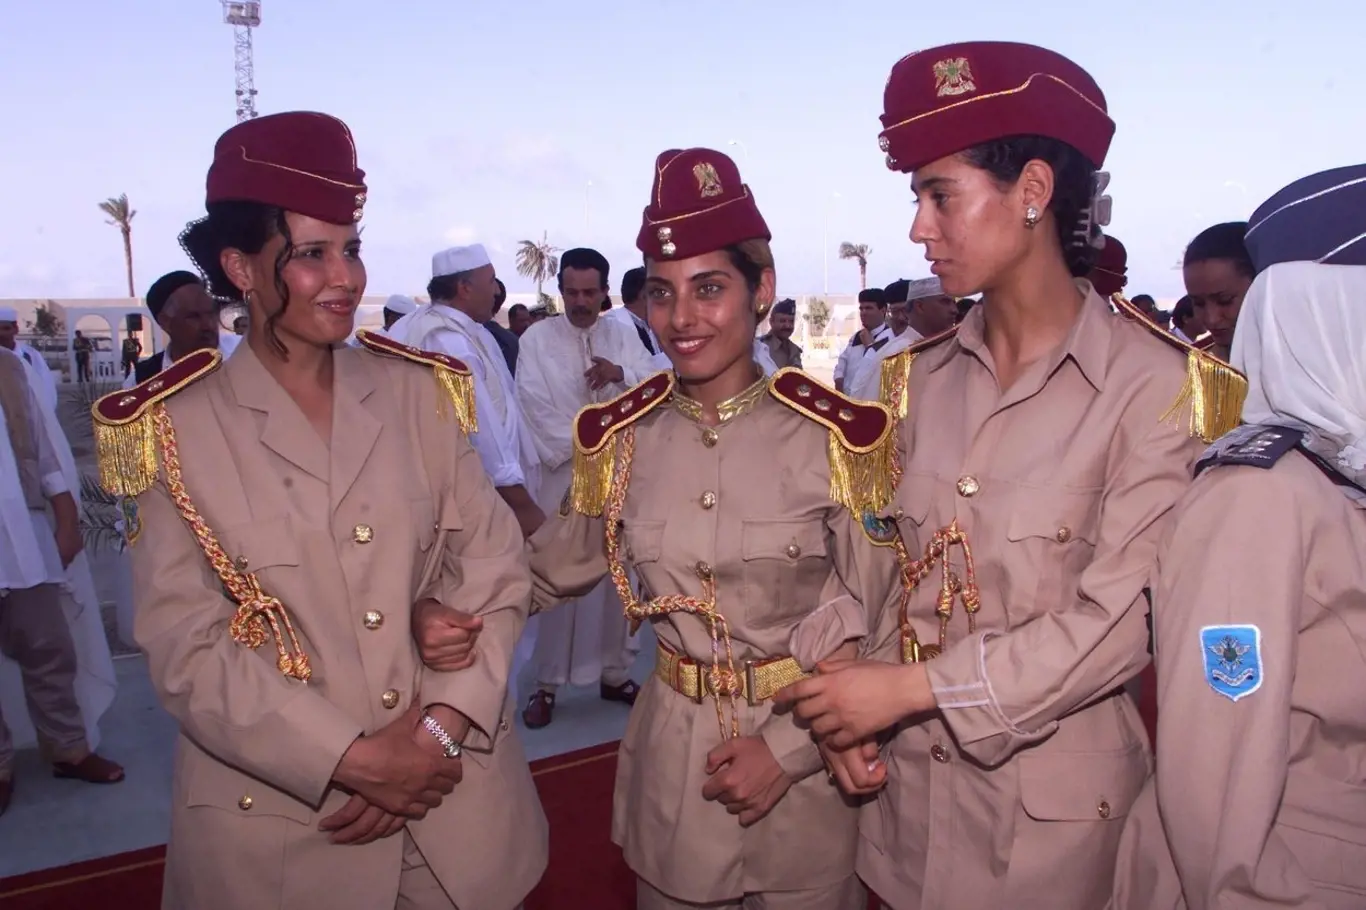 Ochranky Muammara Kaddafího vypadala jako skupina kandidátek na Miss World